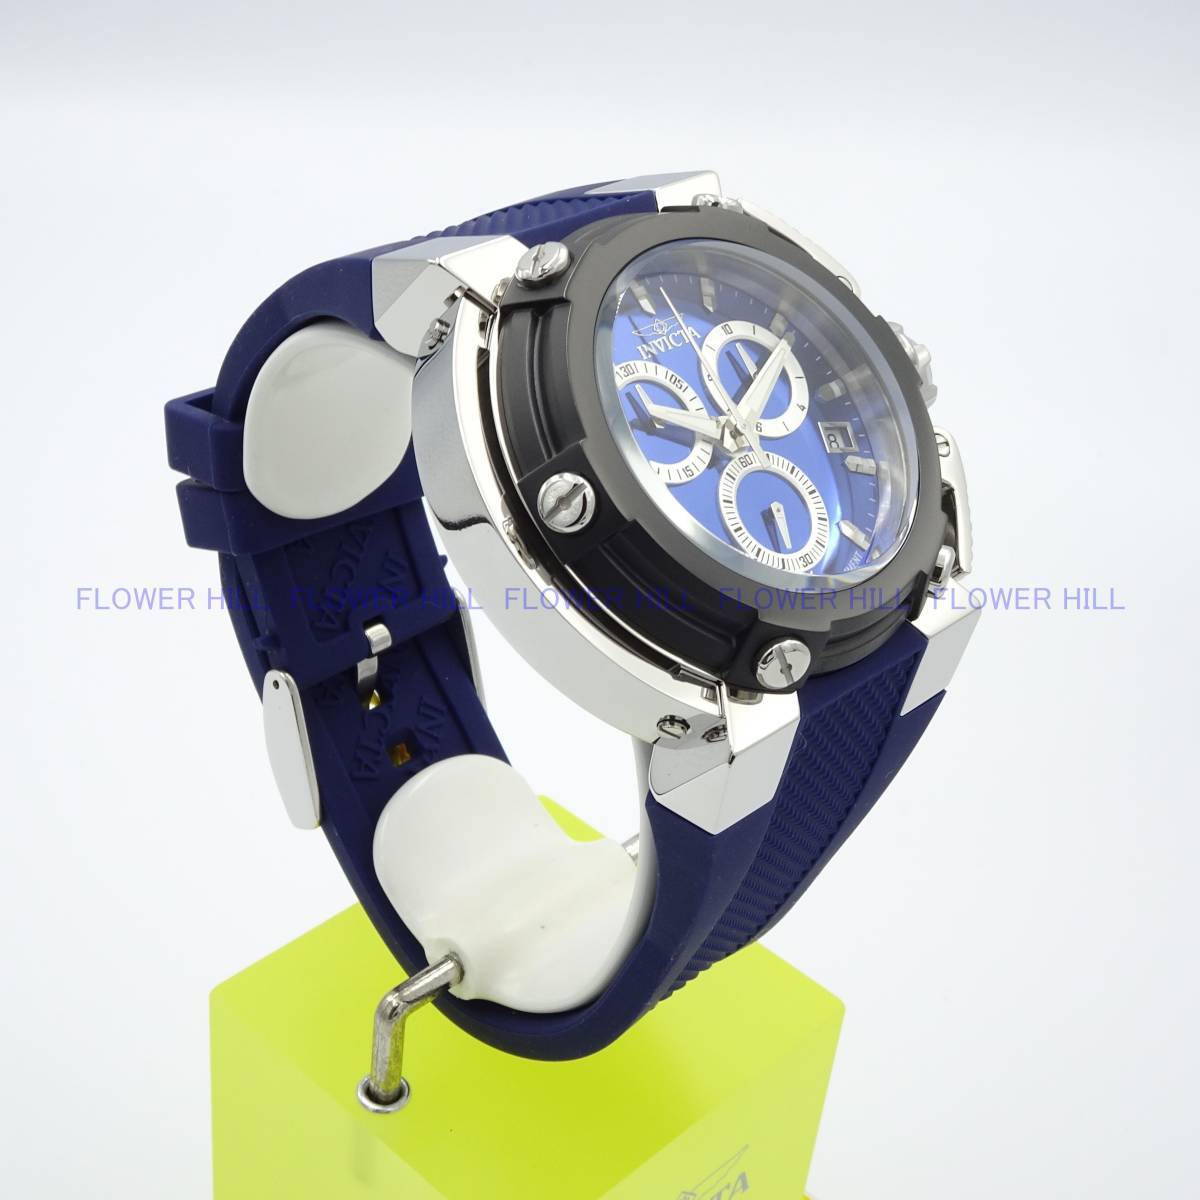 【新品・送料無料】インビクタ INVICTA 腕時計 メンズ クォーツ スイスETA COALITION FORCES X-WING 45330 ブルー シリコンバンド